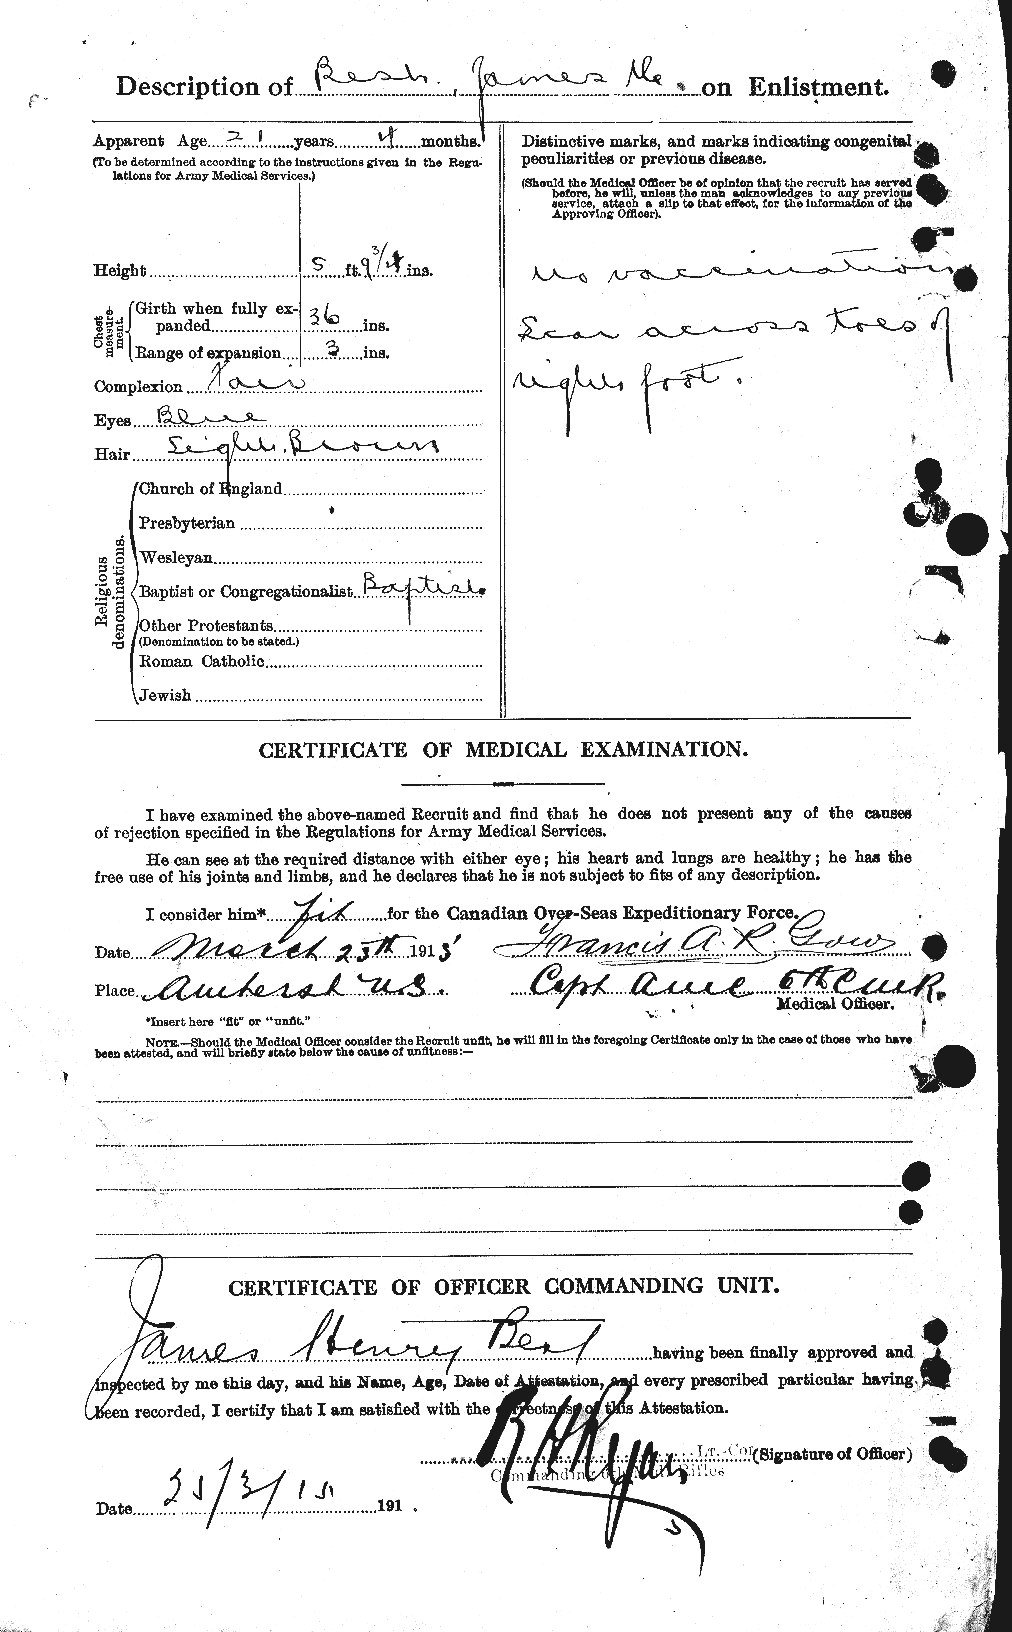 Dossiers du Personnel de la Première Guerre mondiale - CEC 240282b